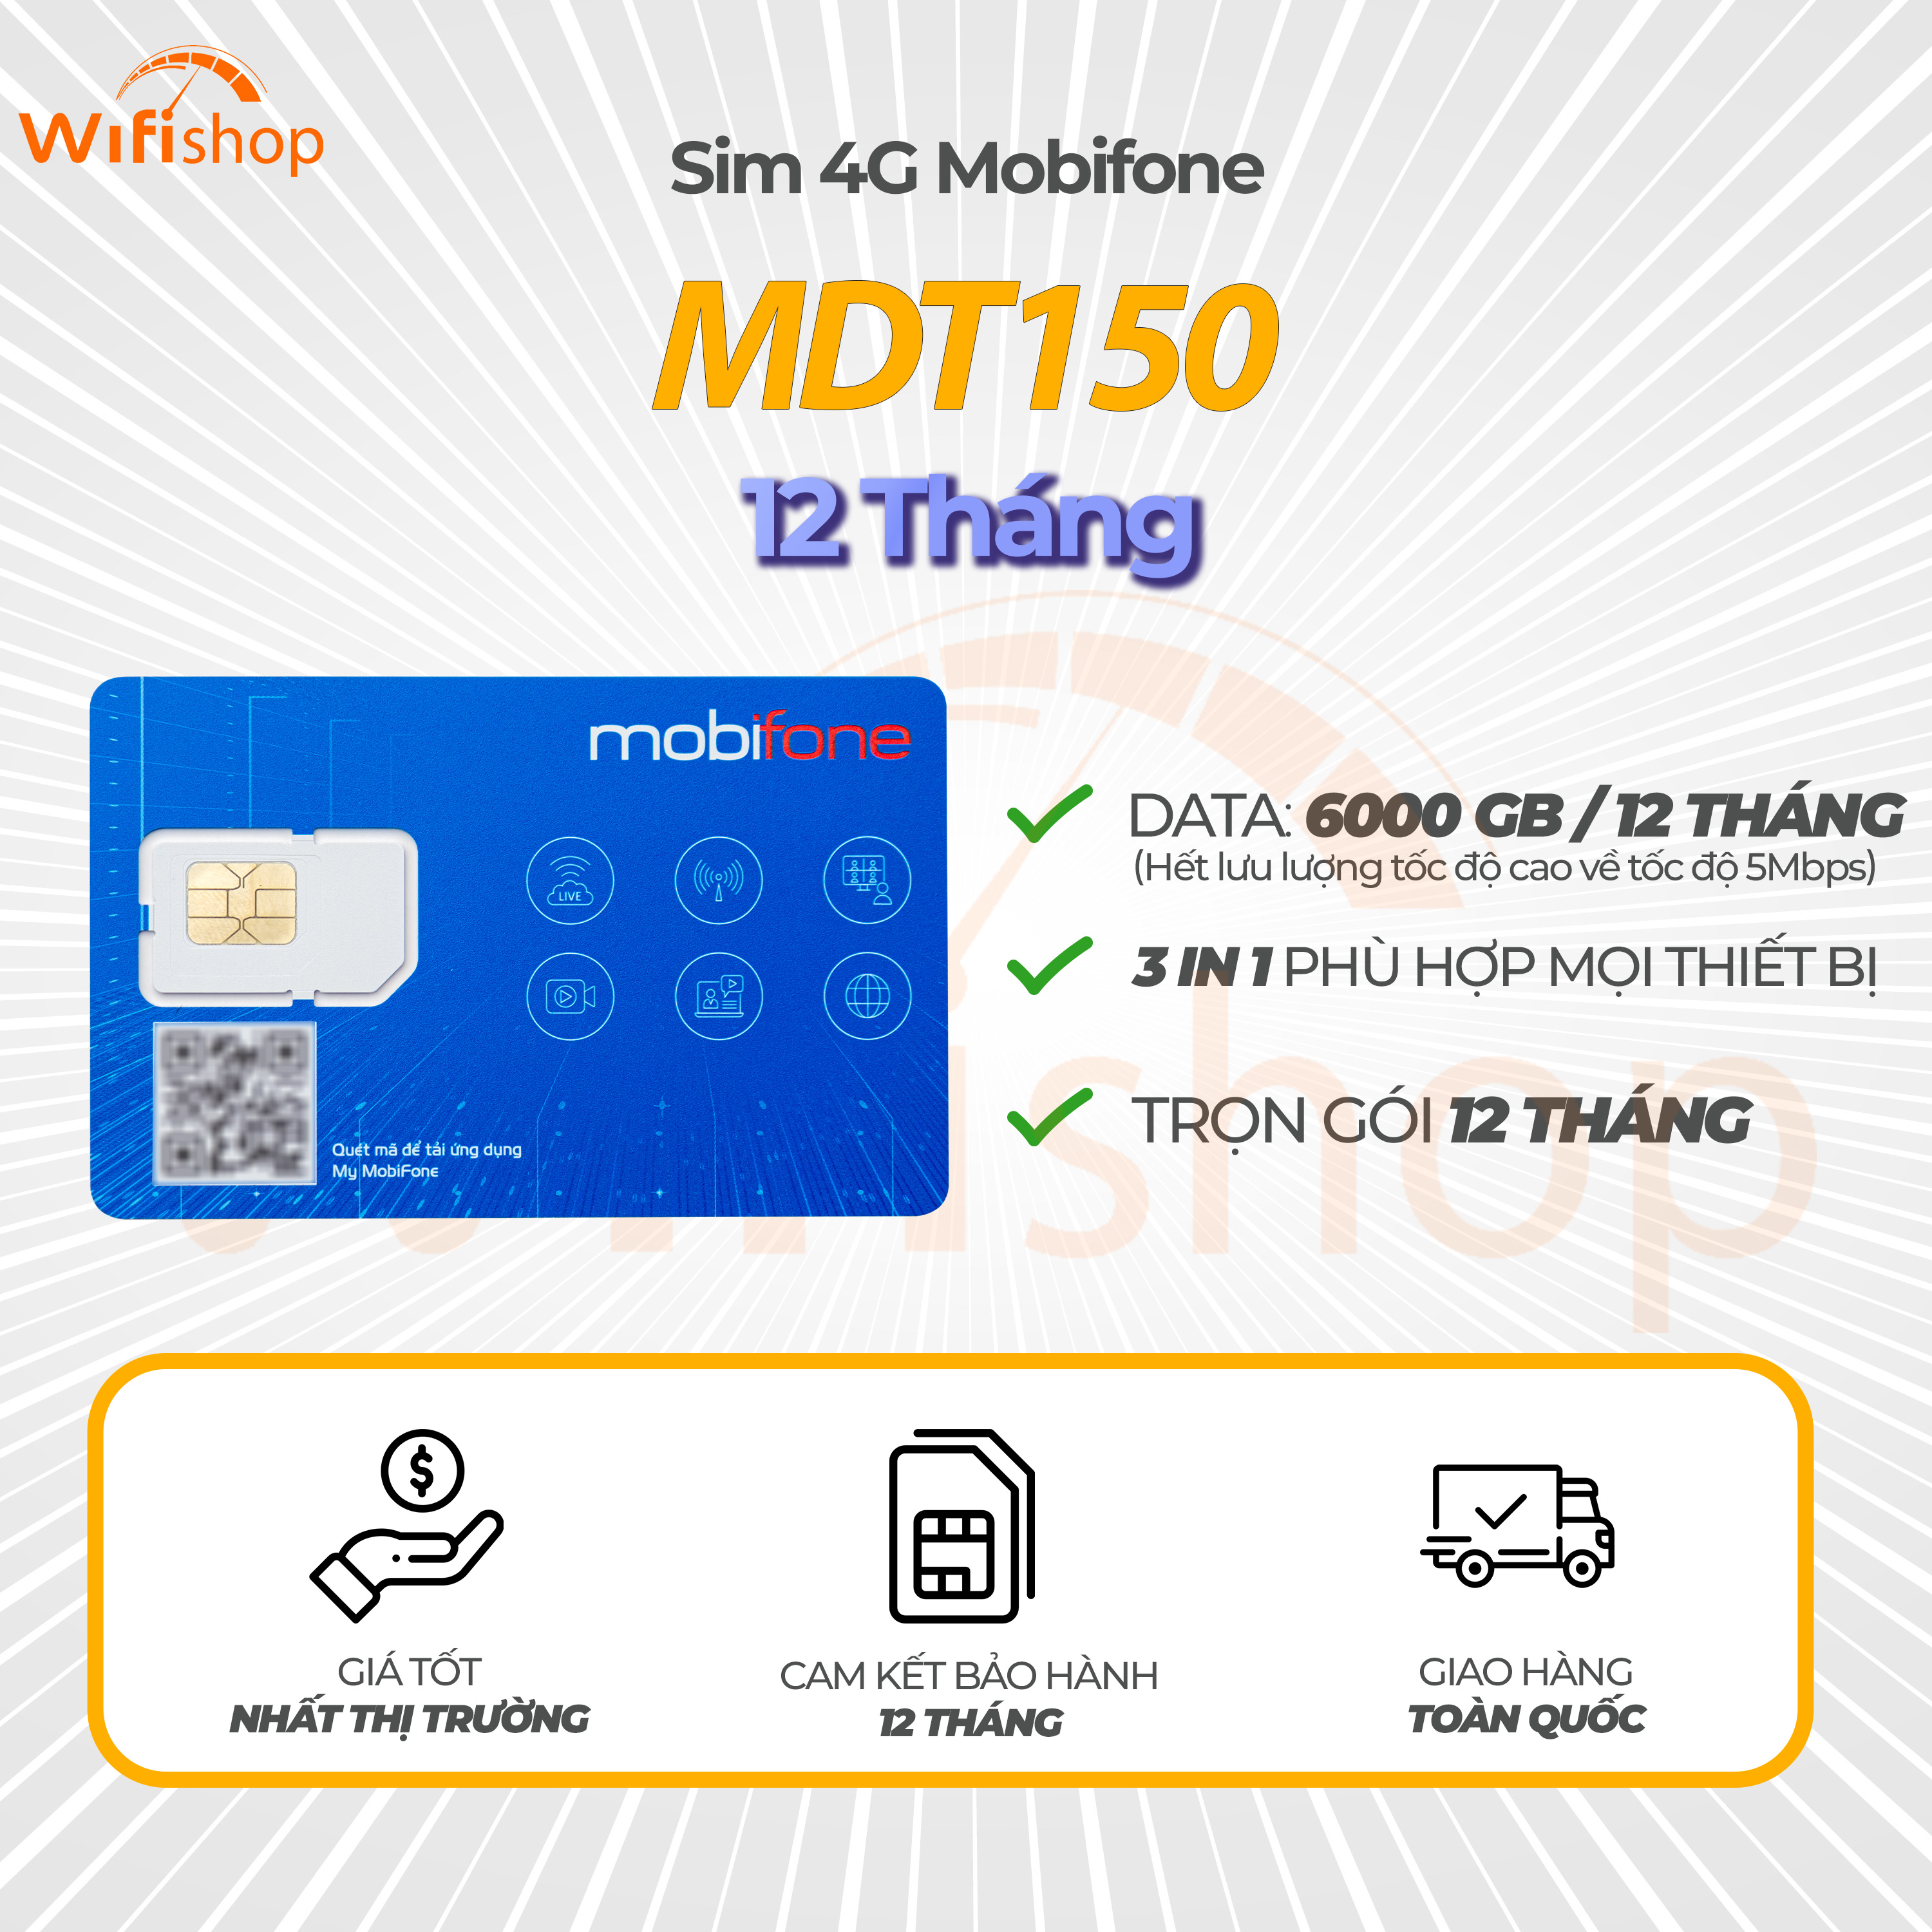 Sim 4G Mobifone MDT150 tặng 500GB/tháng, 6000GB trọn gói 12 tháng không nạp tiền